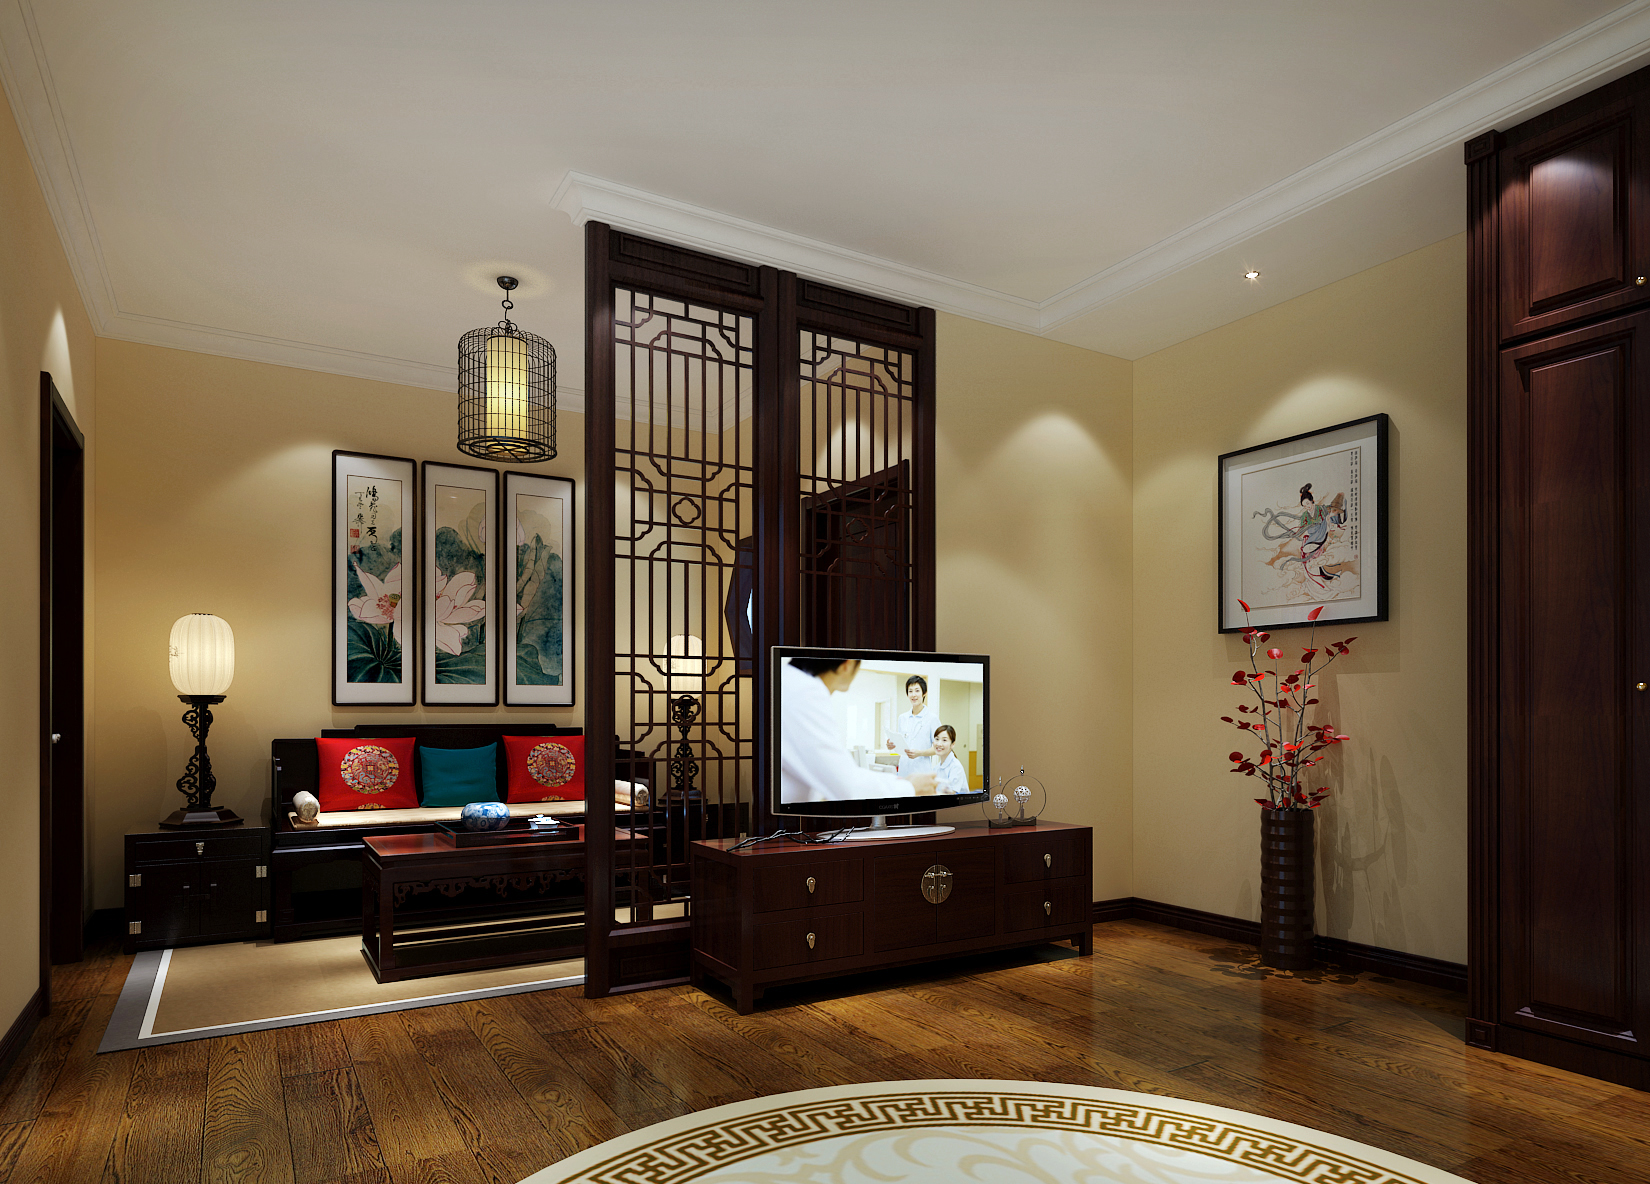 刘杨成 刘杨 卧室图片来自交换空间刘杨成室内设计师在26万打造法式典雅浪漫别墅的分享